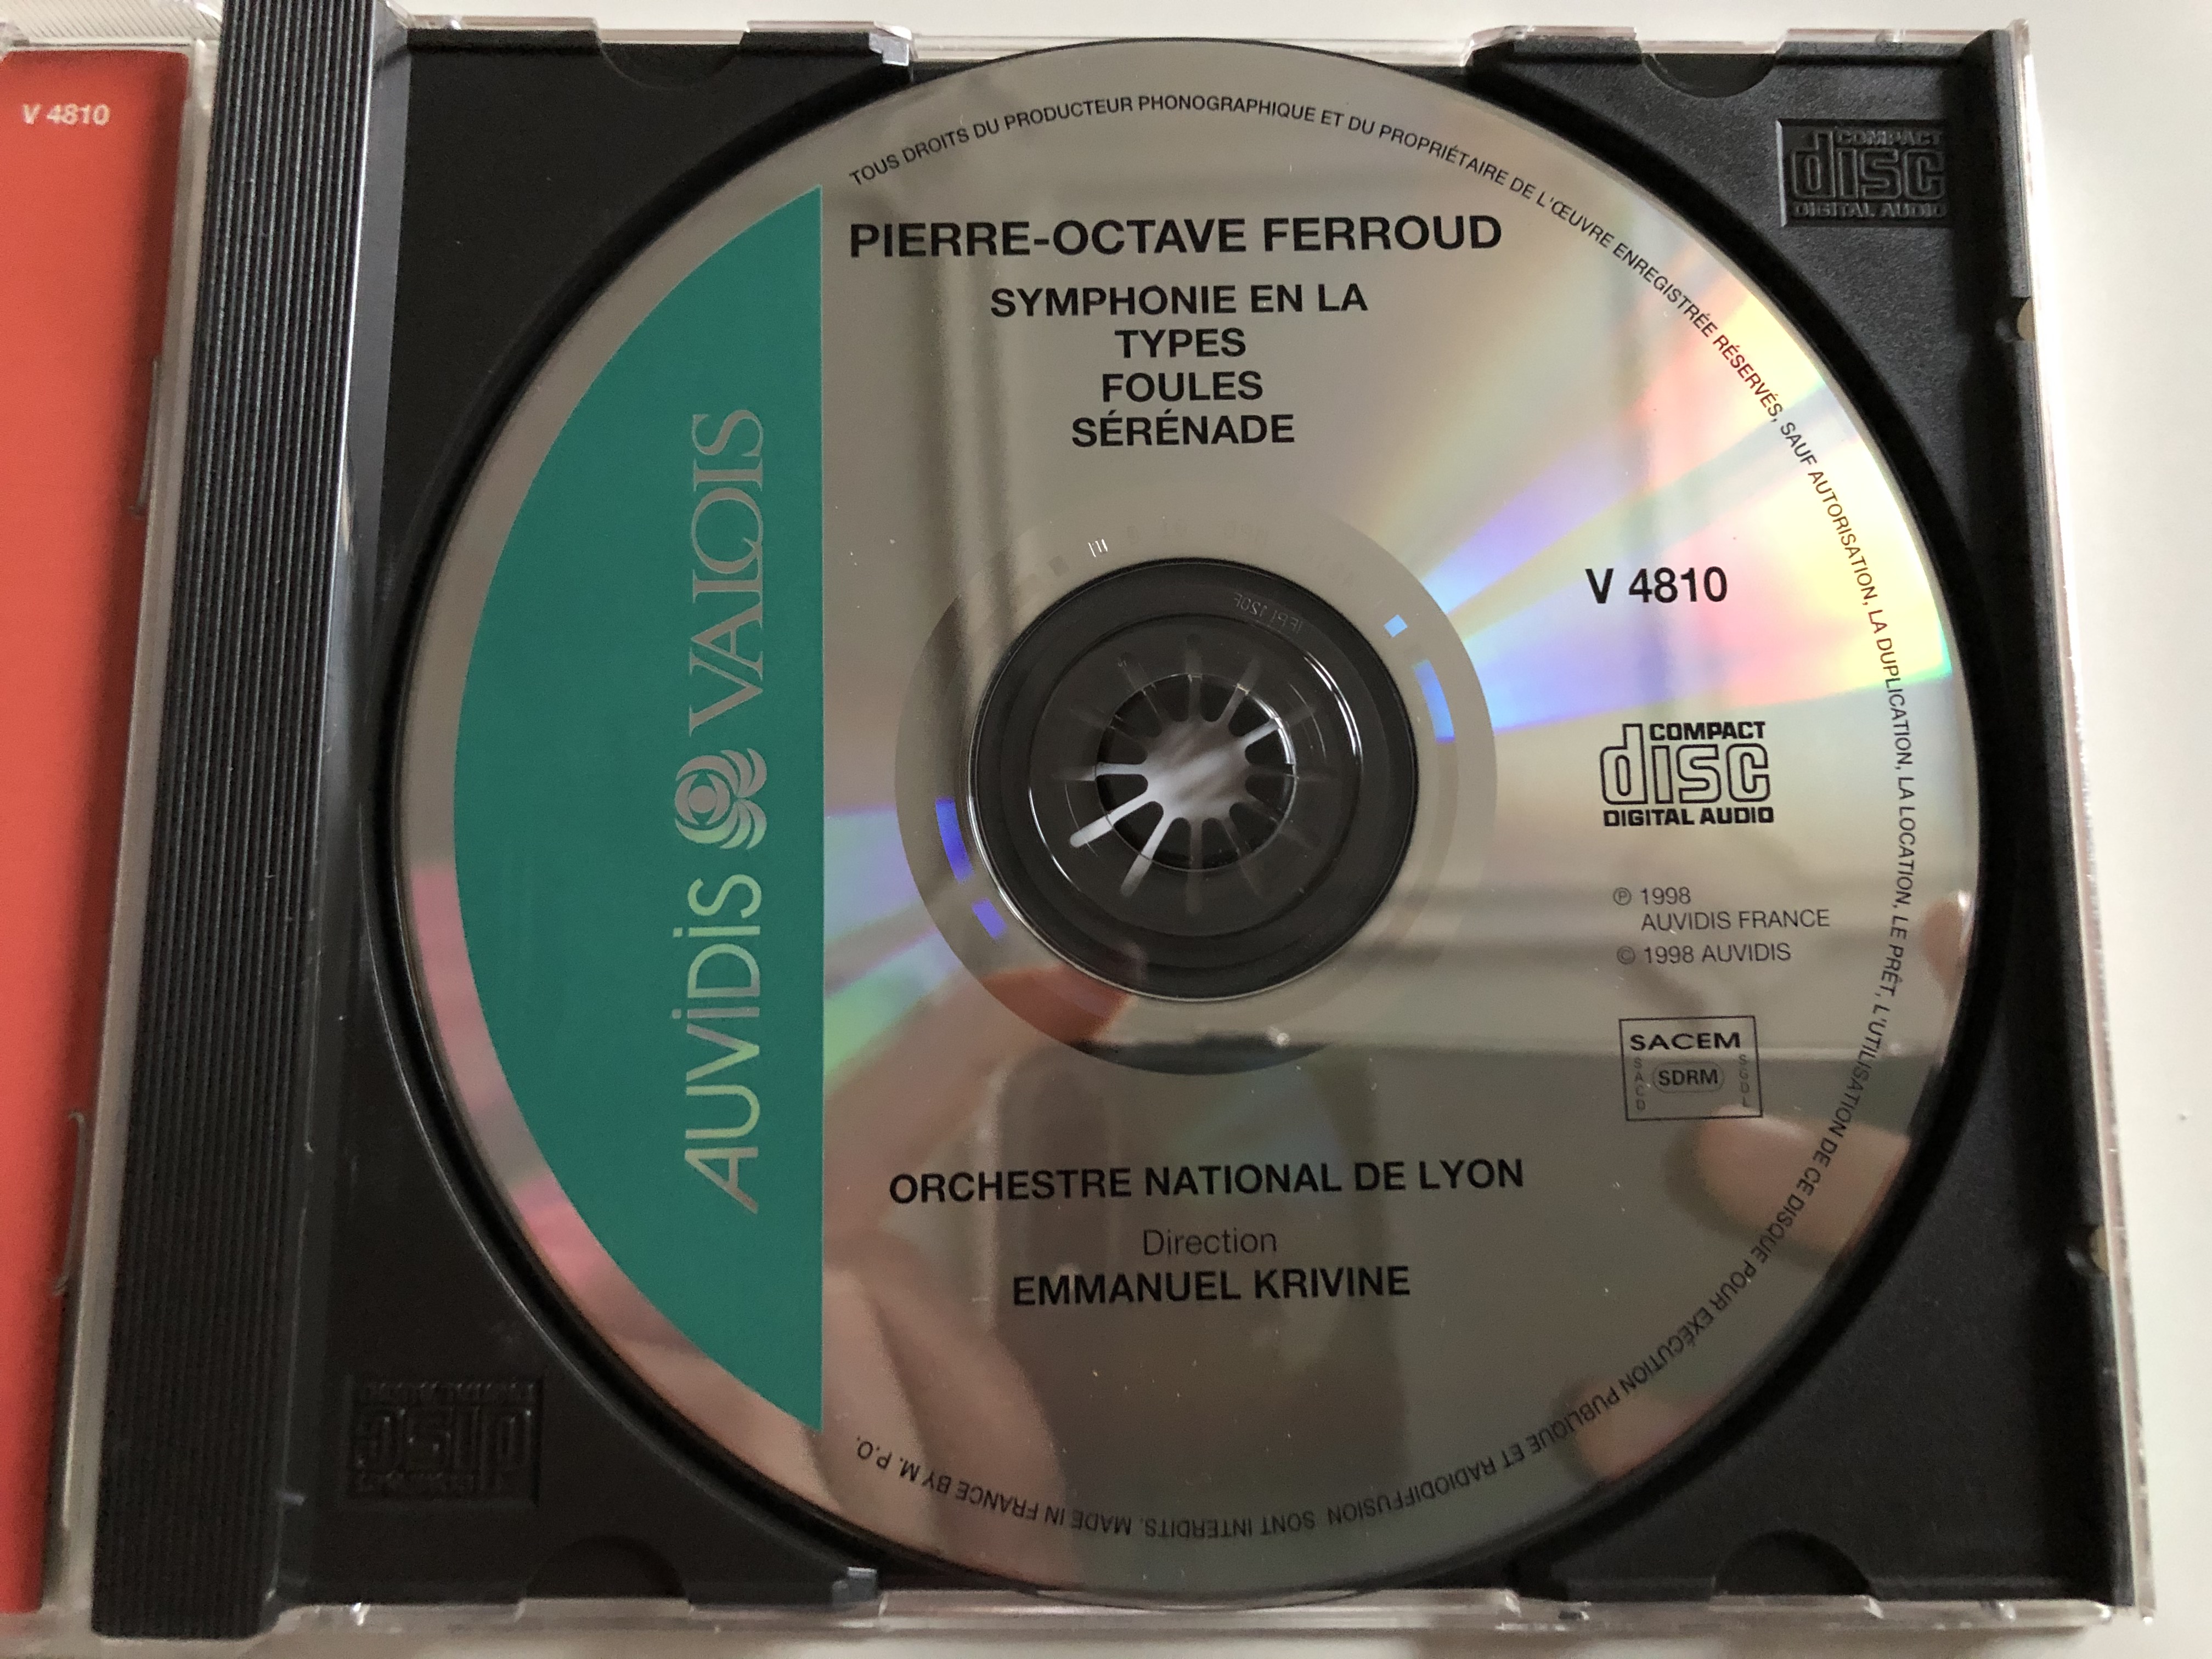 pierre-octave-ferroud-symphonie-en-la-types-serenade-foules-orchestre-national-de-lyon-emmanuel-krivine-auvidis-valois-audio-cd-1998-v-4810-6-.jpg